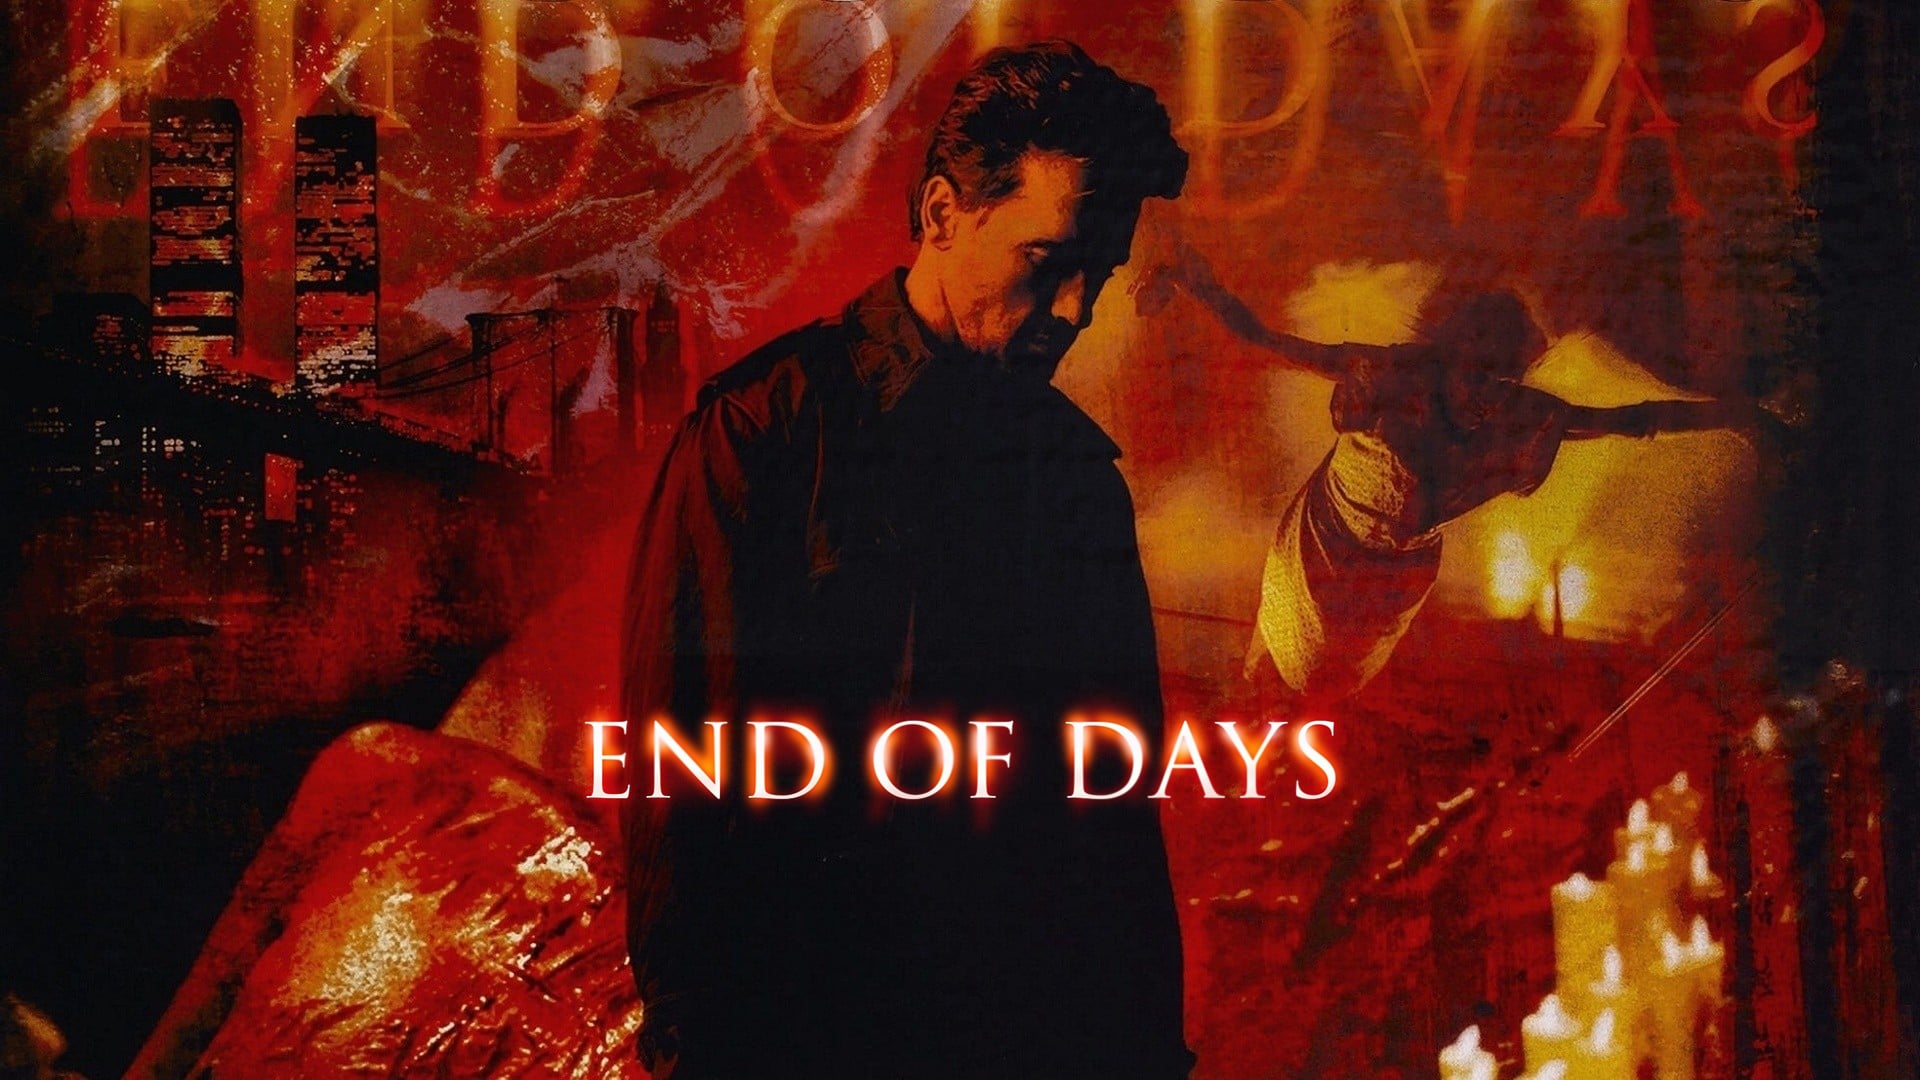 End of Days - Nacht ohne Morgen (1999)